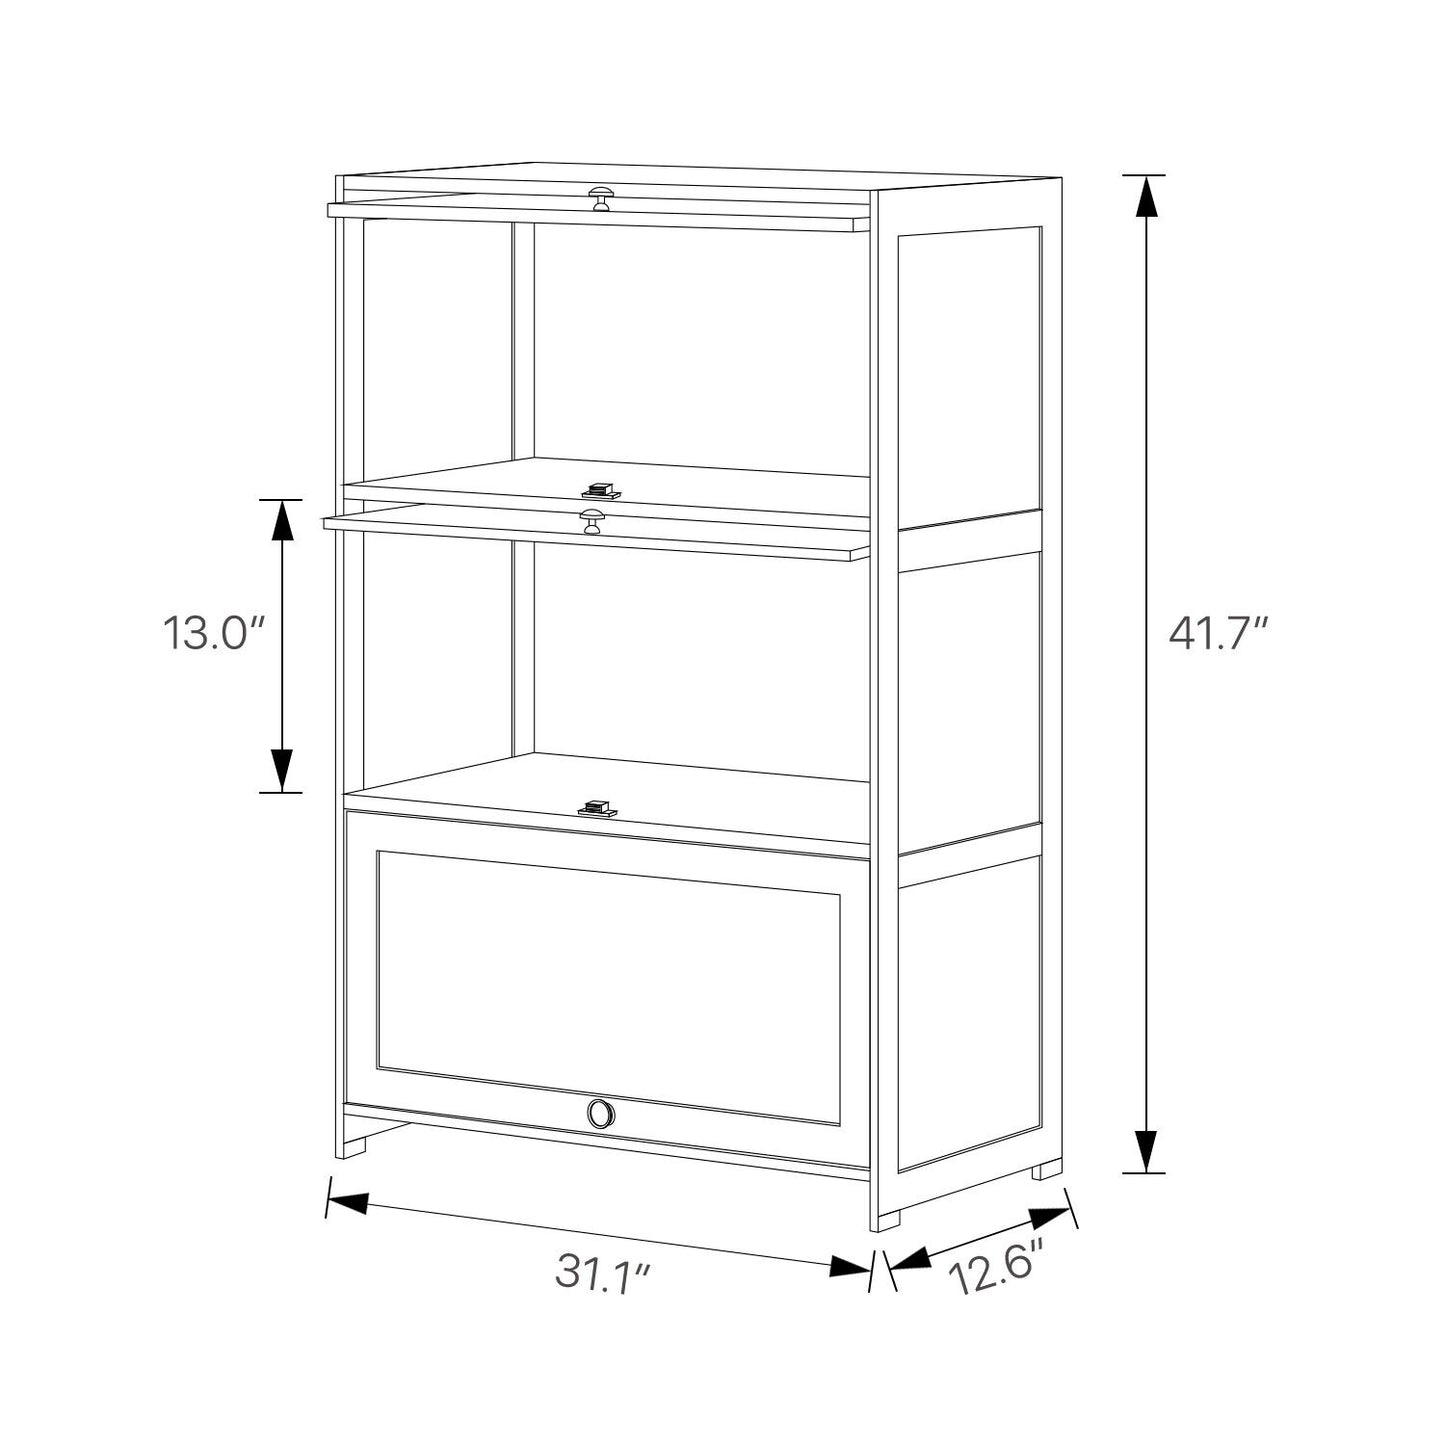 Slide Up Door Multi-Functional Storage Cabinet - 3 Tier - Brown